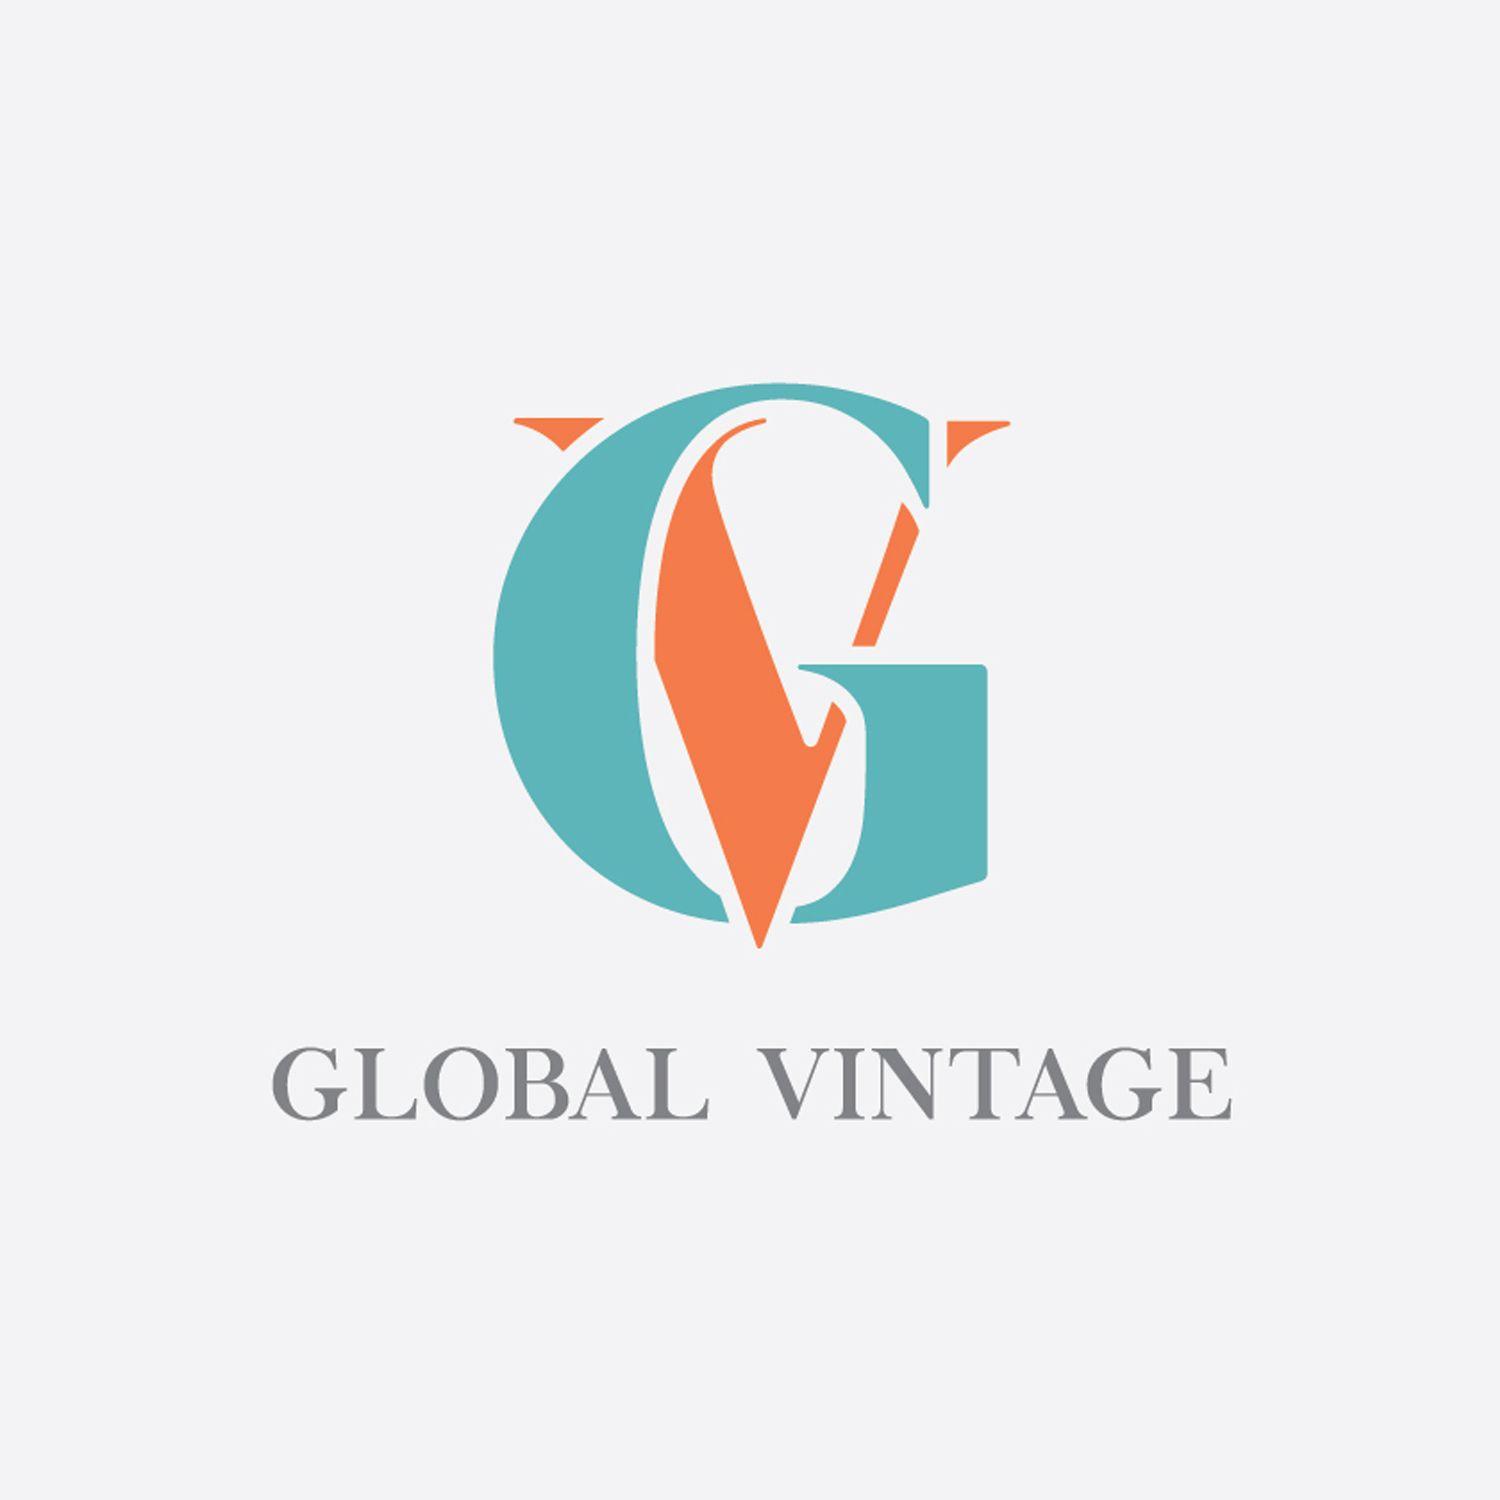 GV Logo - Upmarket, Playful, Events Logo Design for Global Vintage or GV